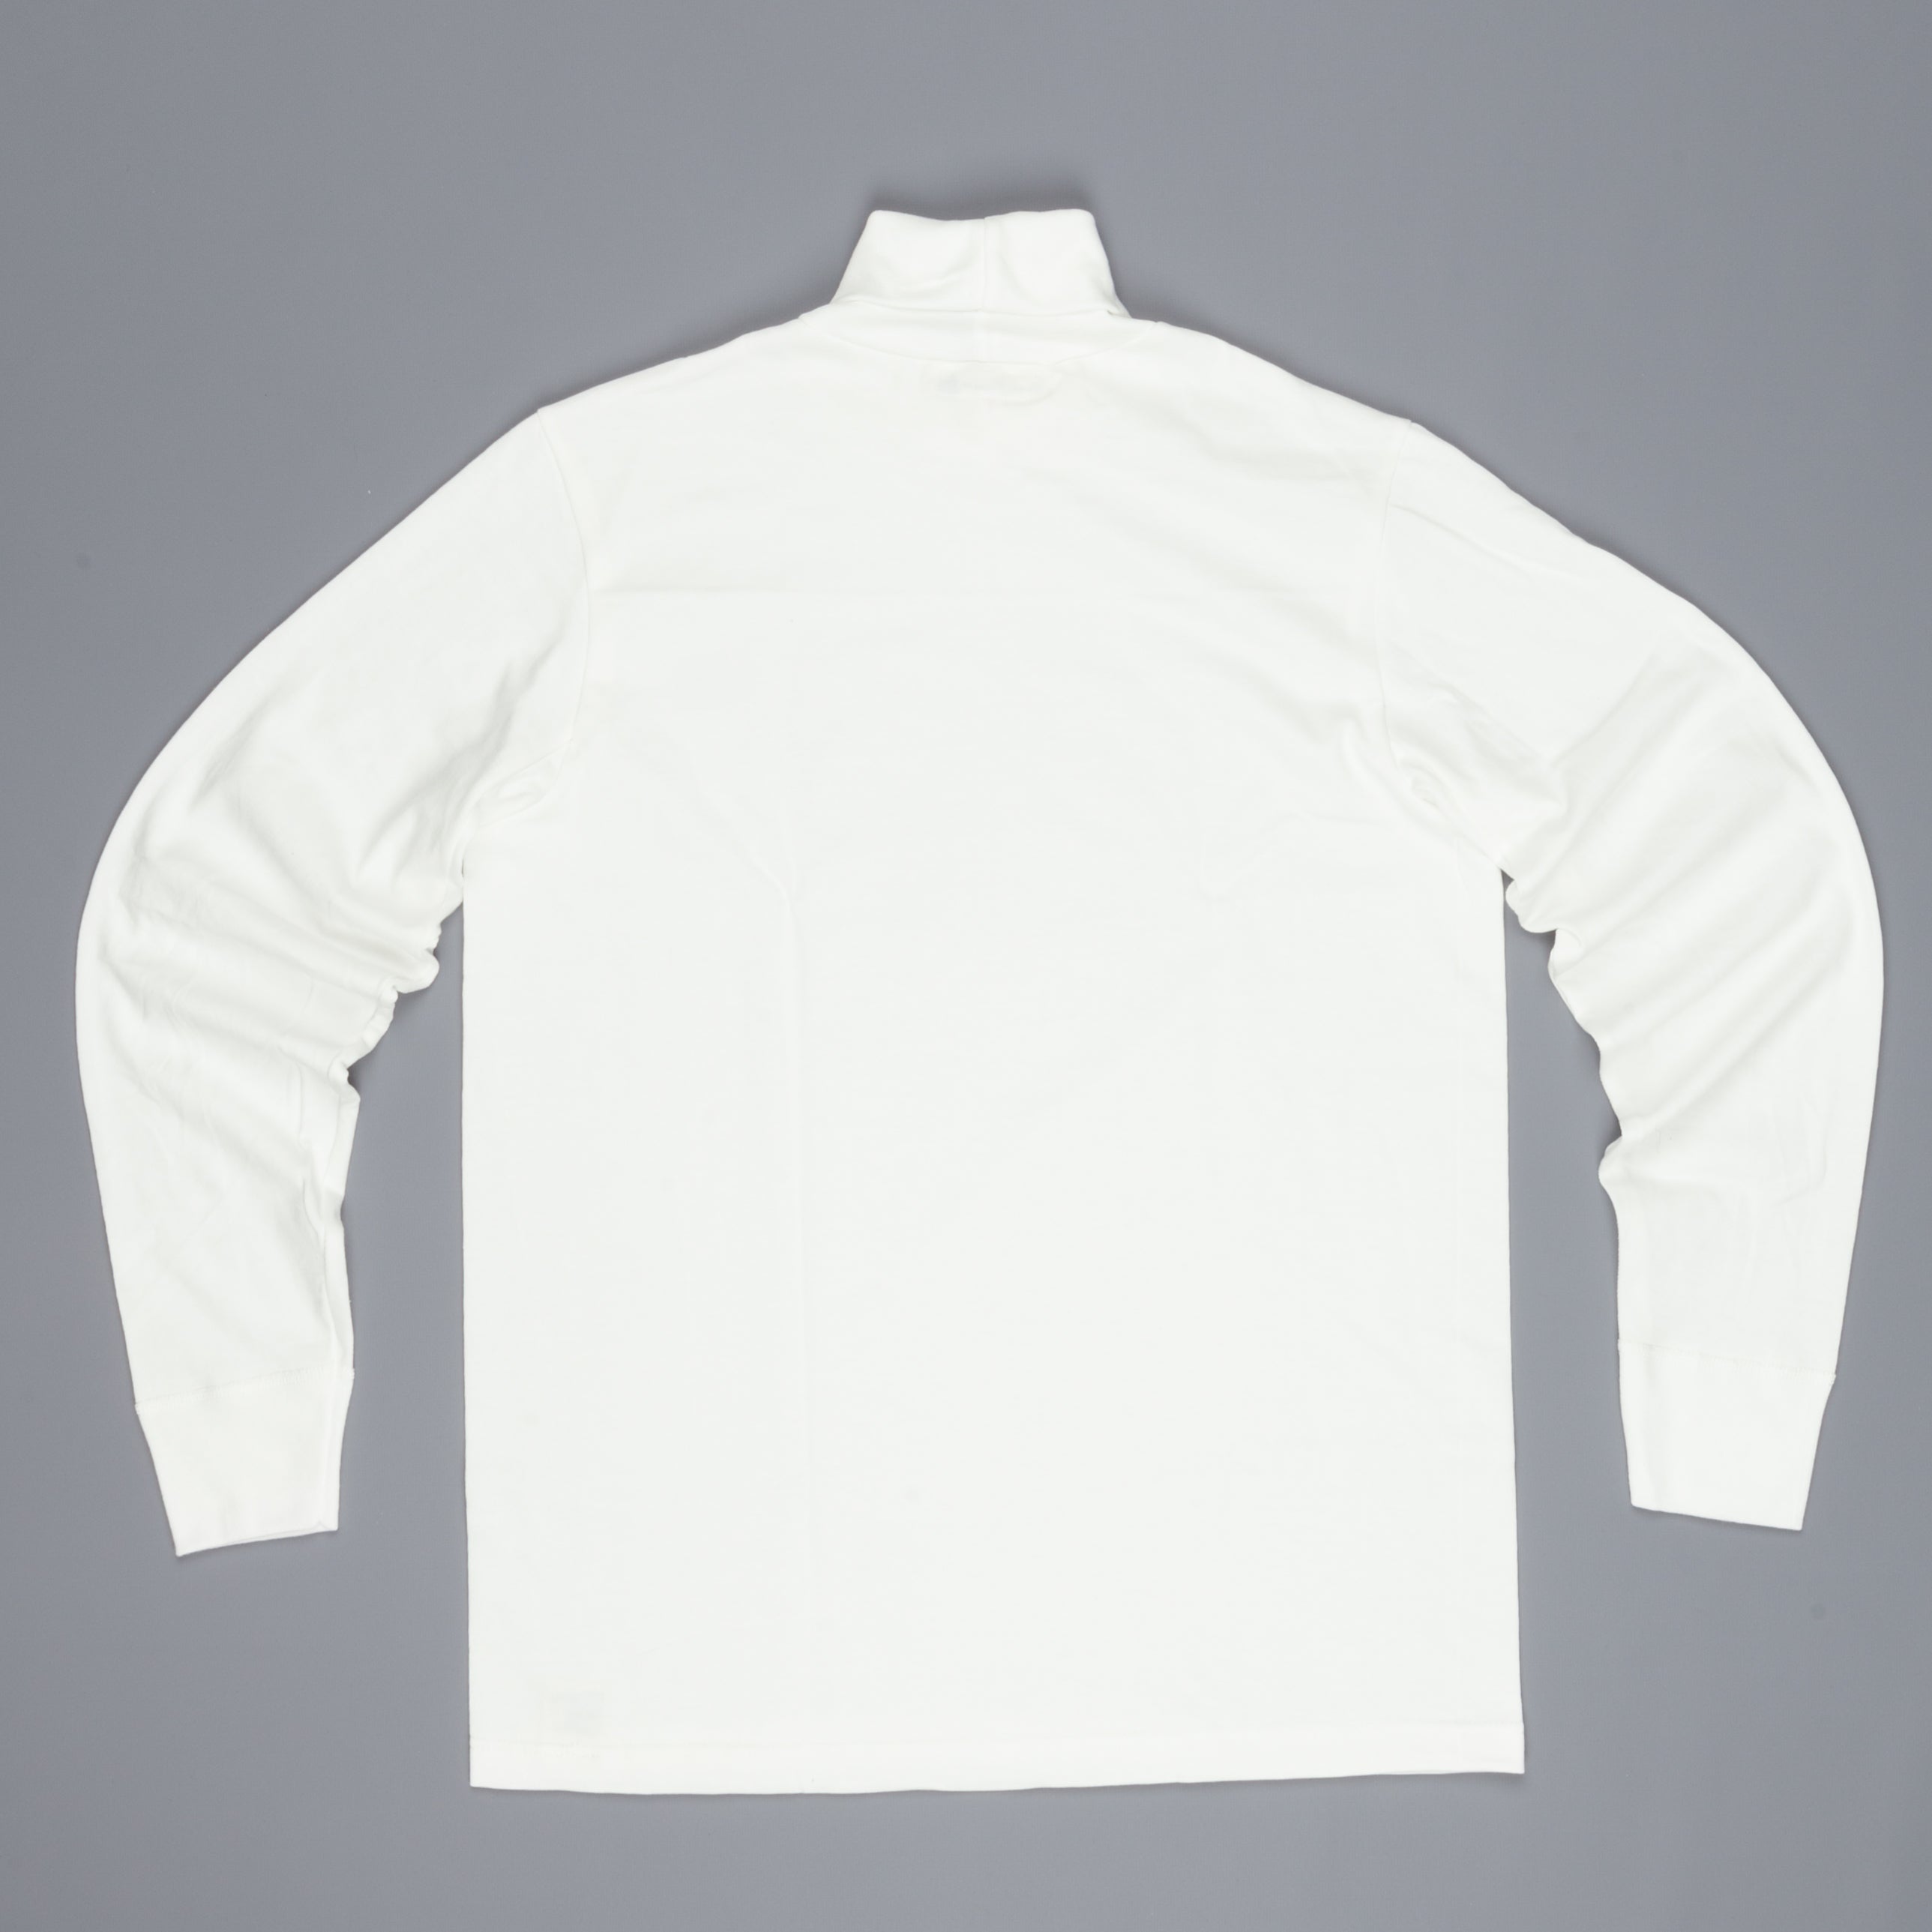 Merz B Schwanen turtleneck prima quality 2 thread white – Frans Boone Store